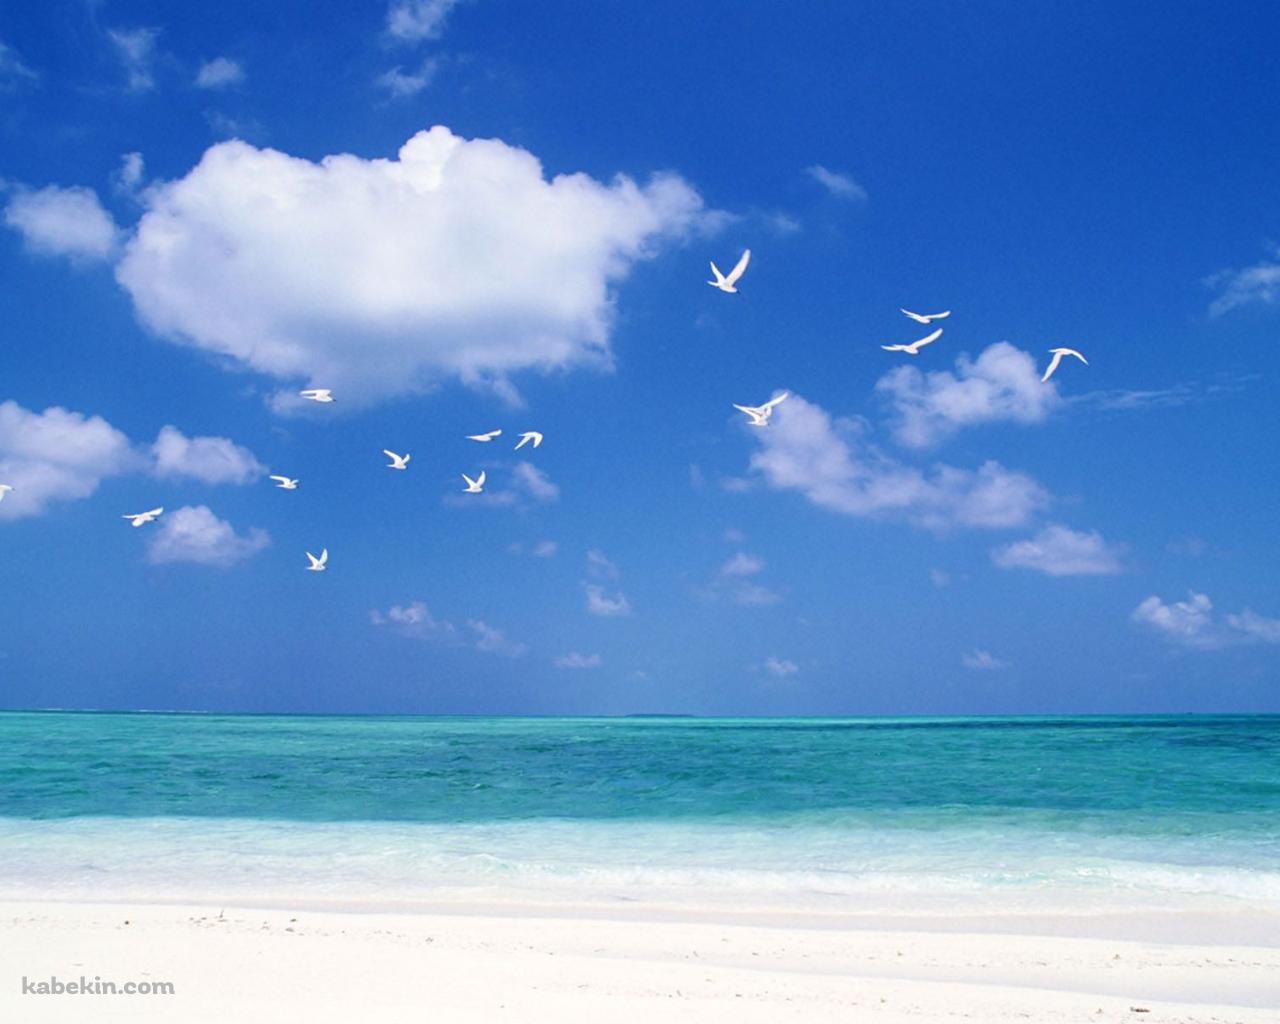 夏のビーチ 白い鳥の壁紙(1280px x 1024px) 高画質 PC・デスクトップ用